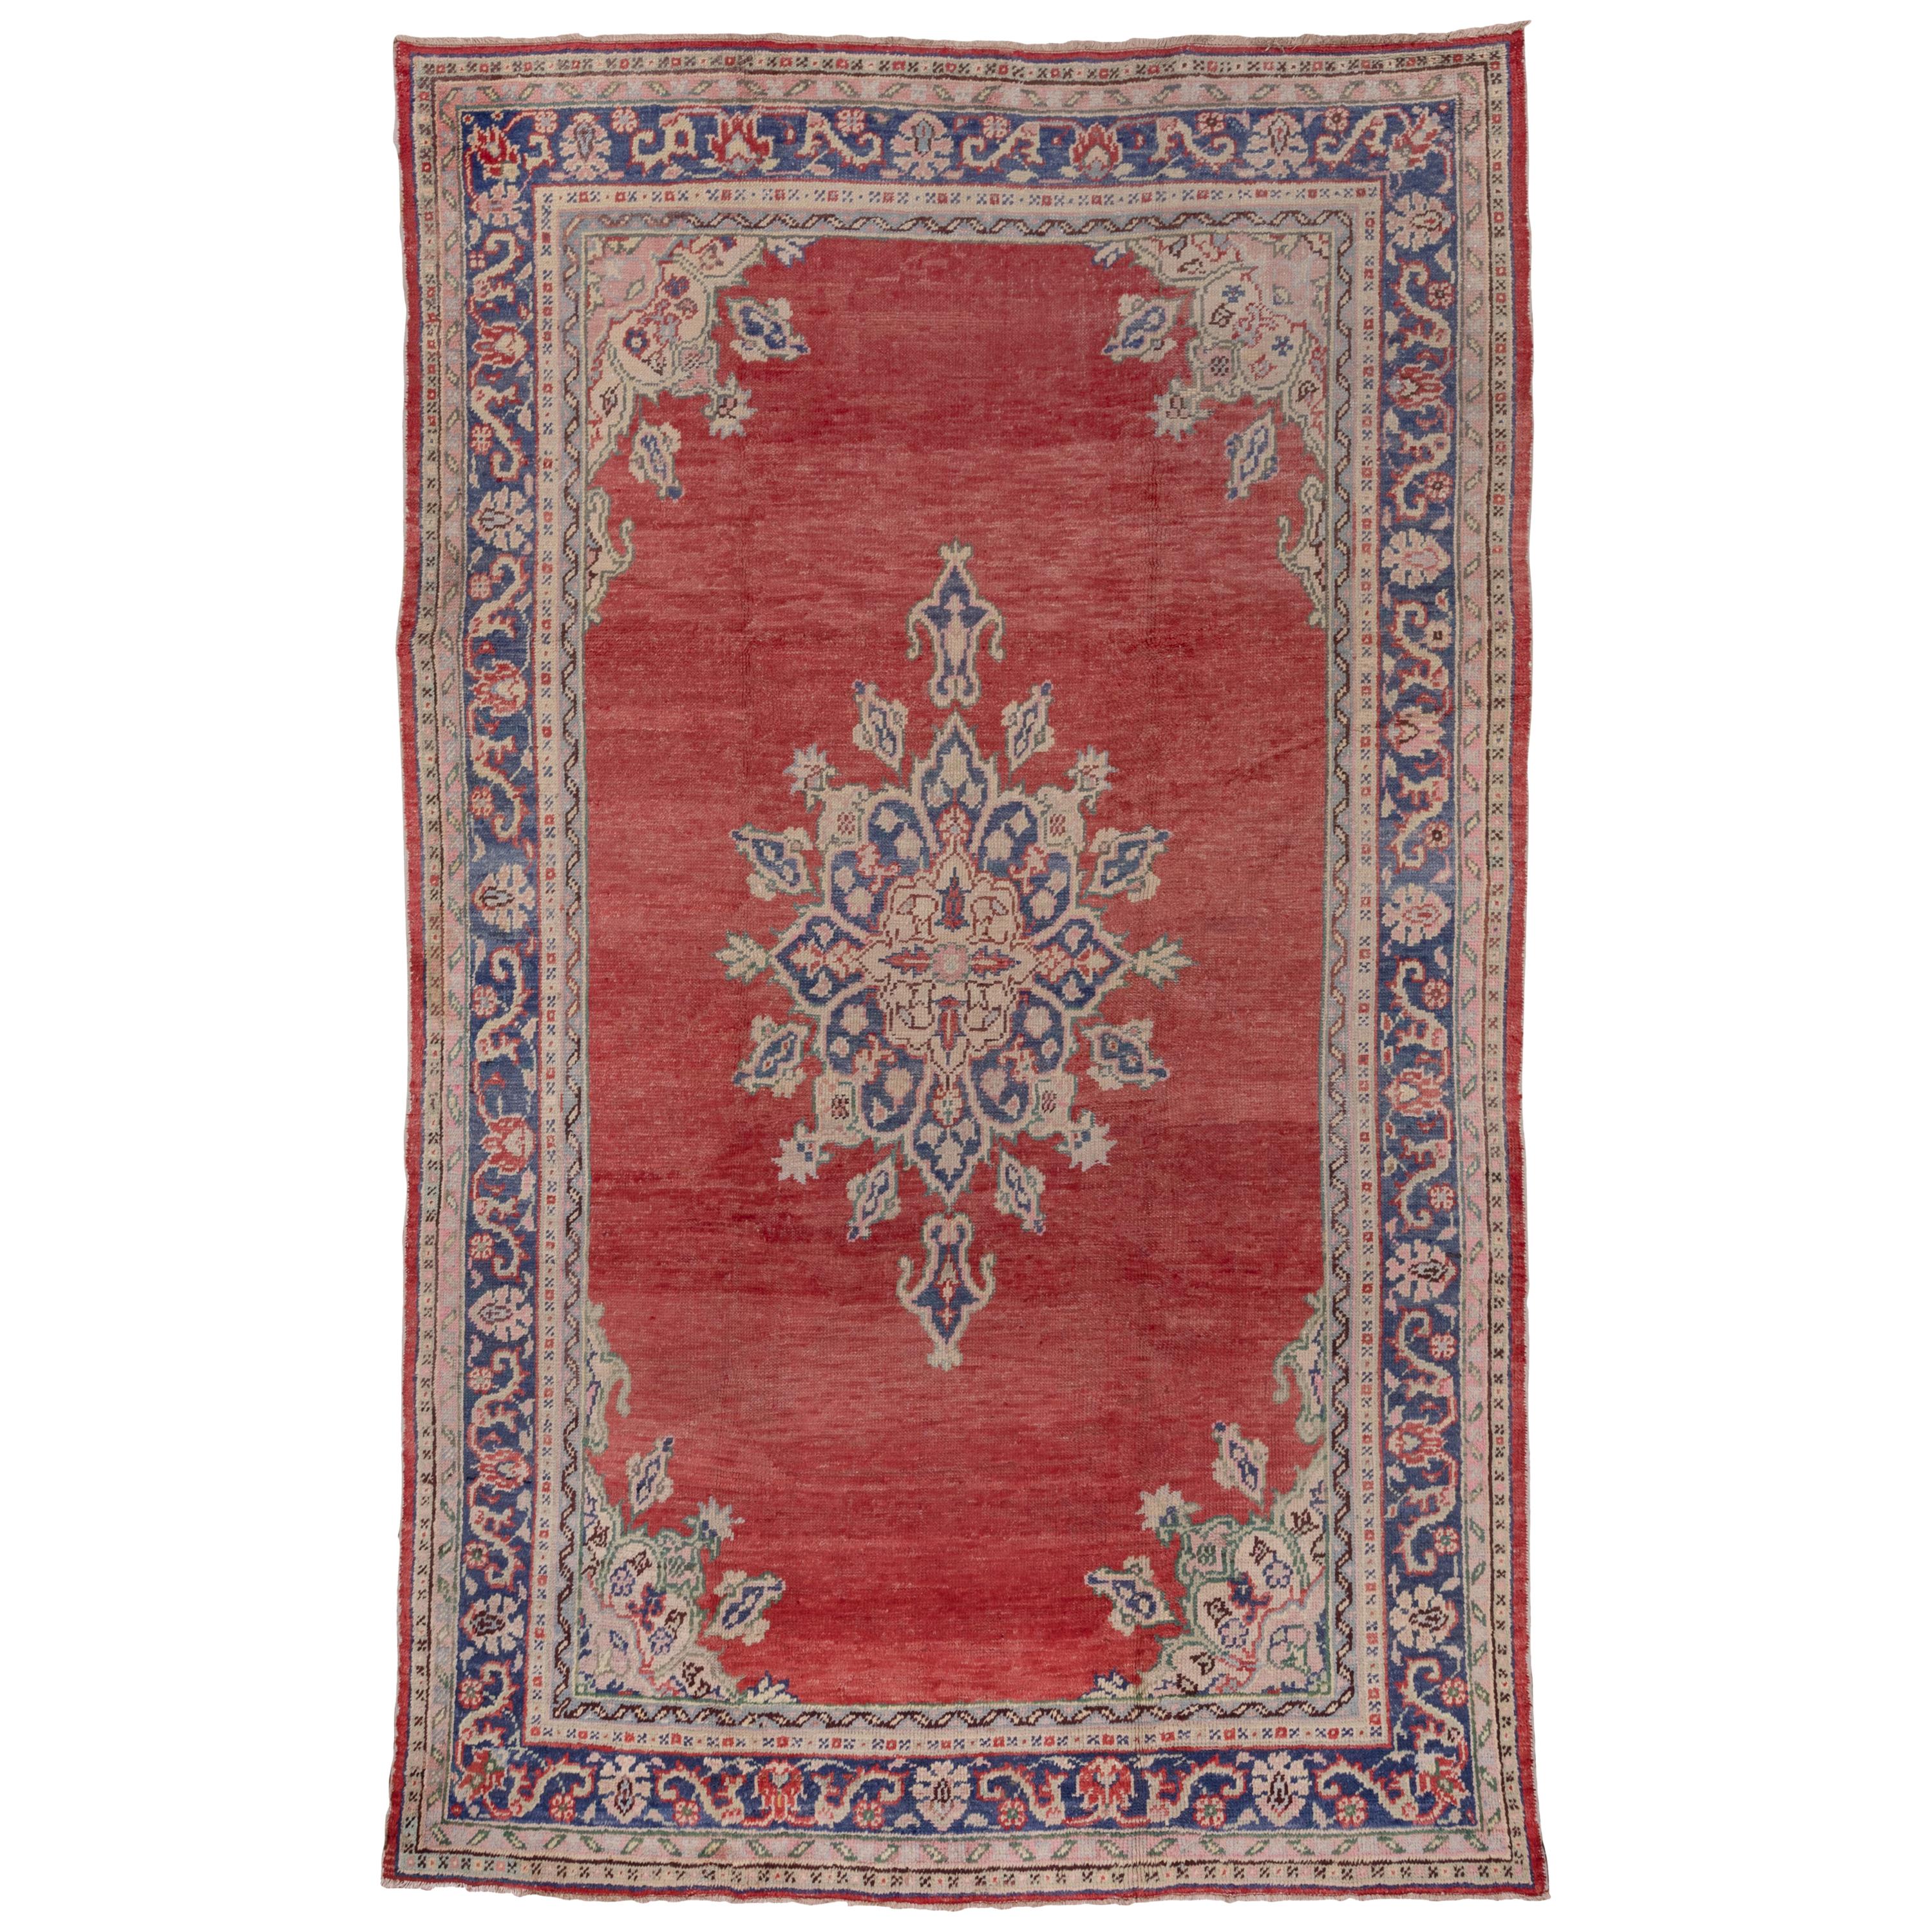 Turkish Red Oushak Carpet, circa 1920s